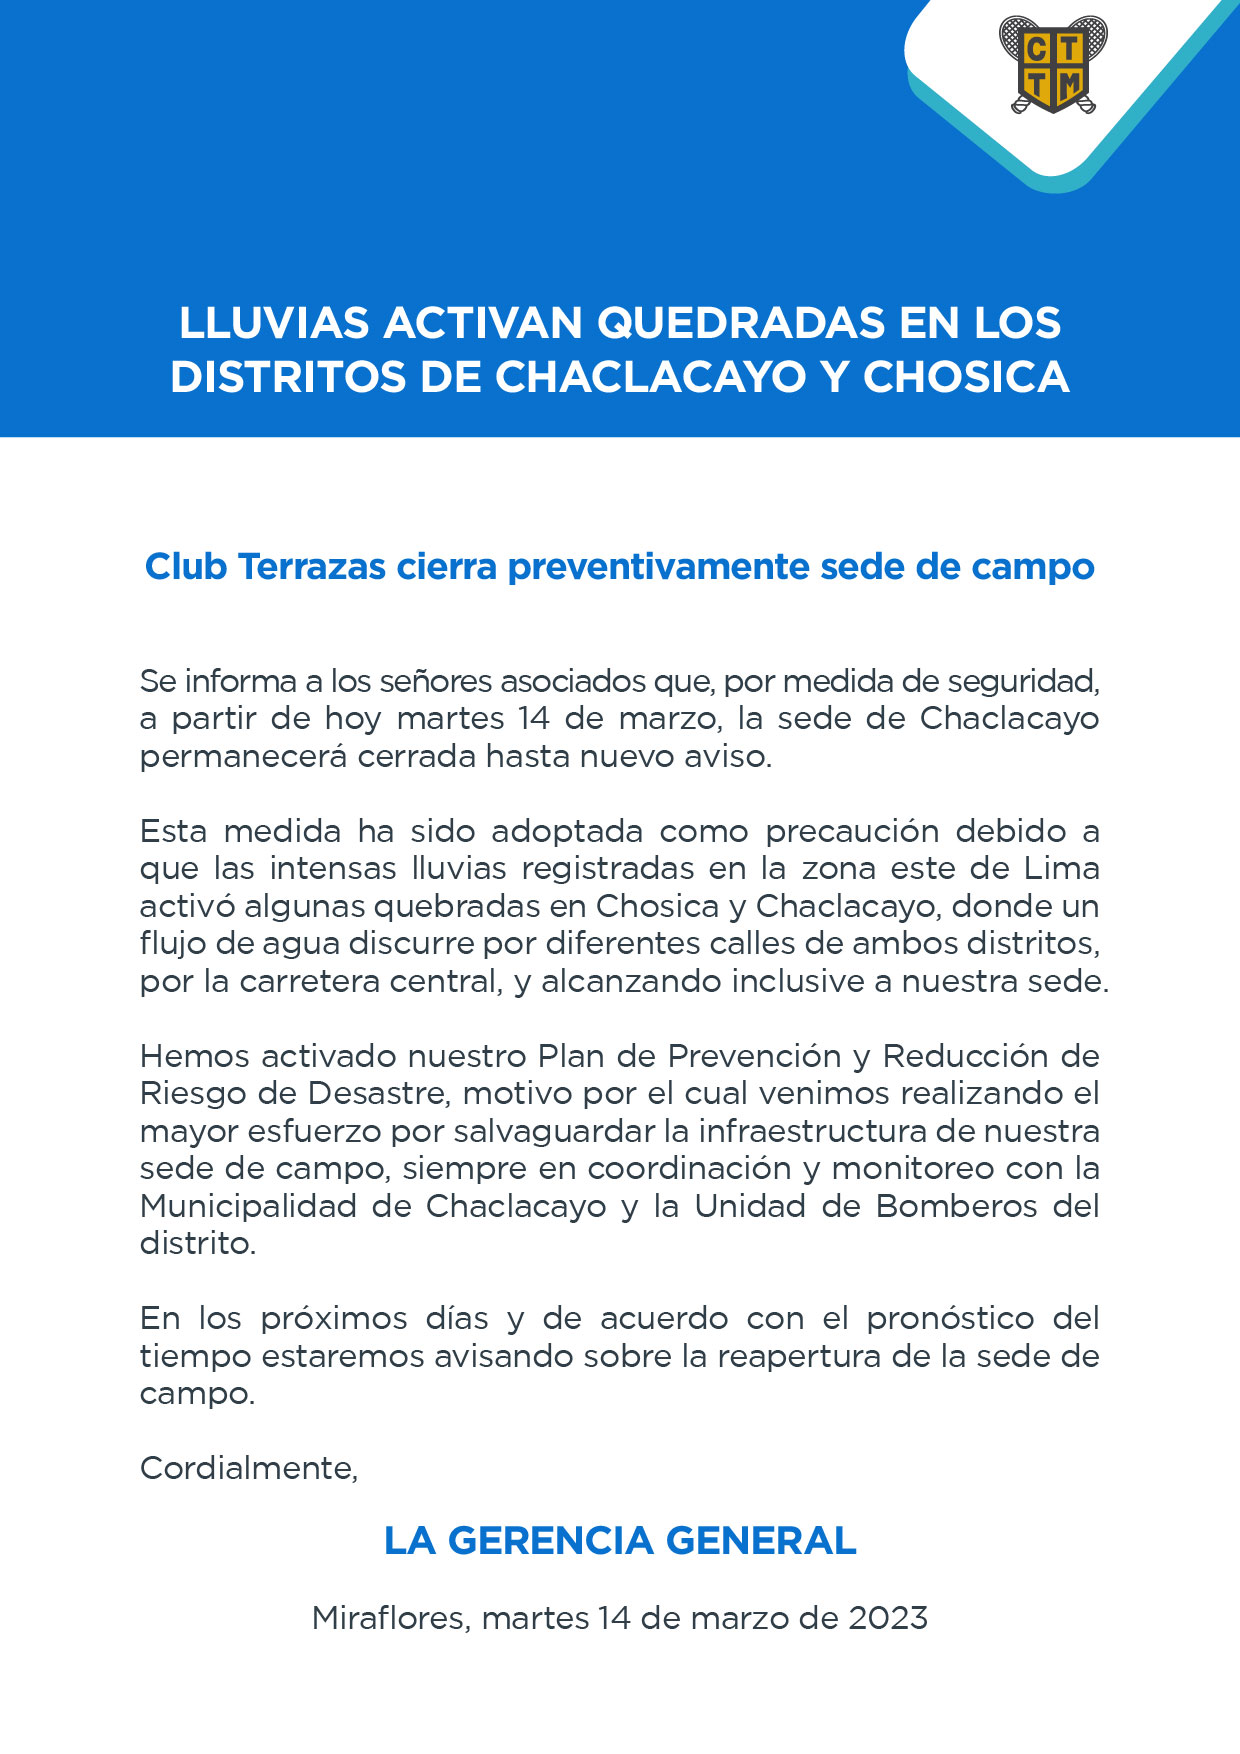 LLUVIAS ACTIVAN QUEDRADAS EN LOS DISTRITOS DE CHACLACAYO Y CHOSICA